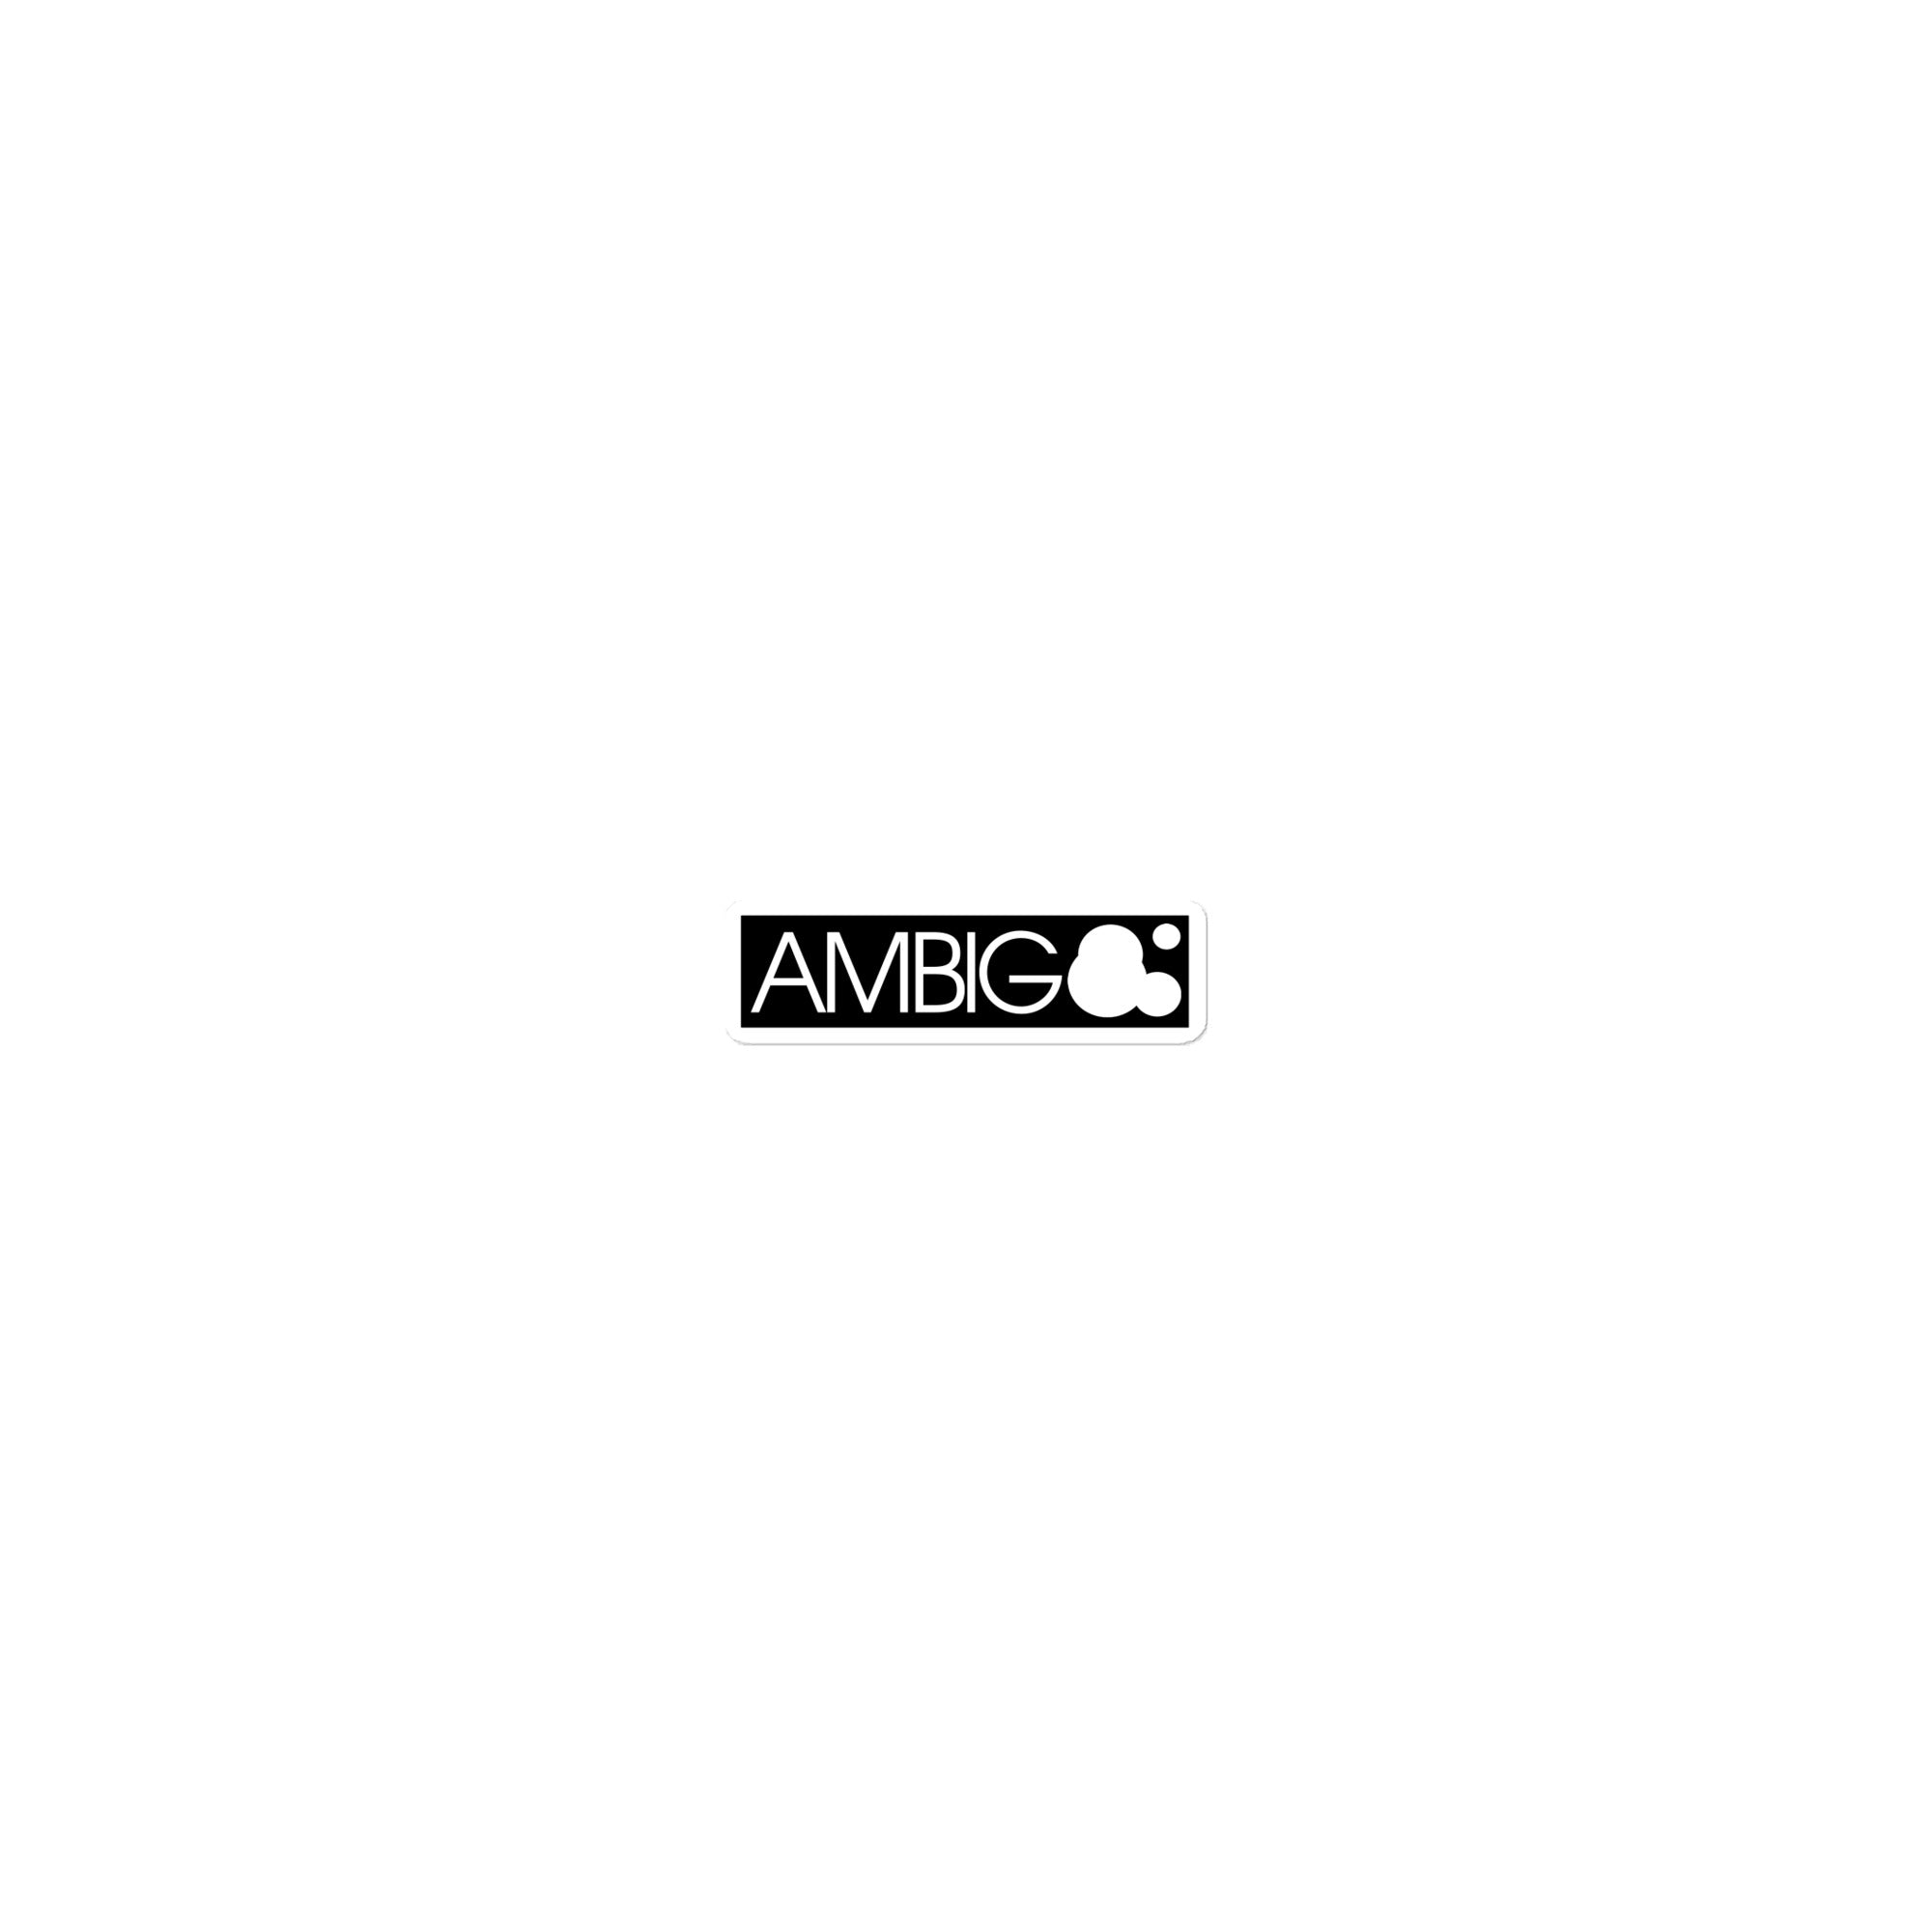 AMBIG Box Sticker